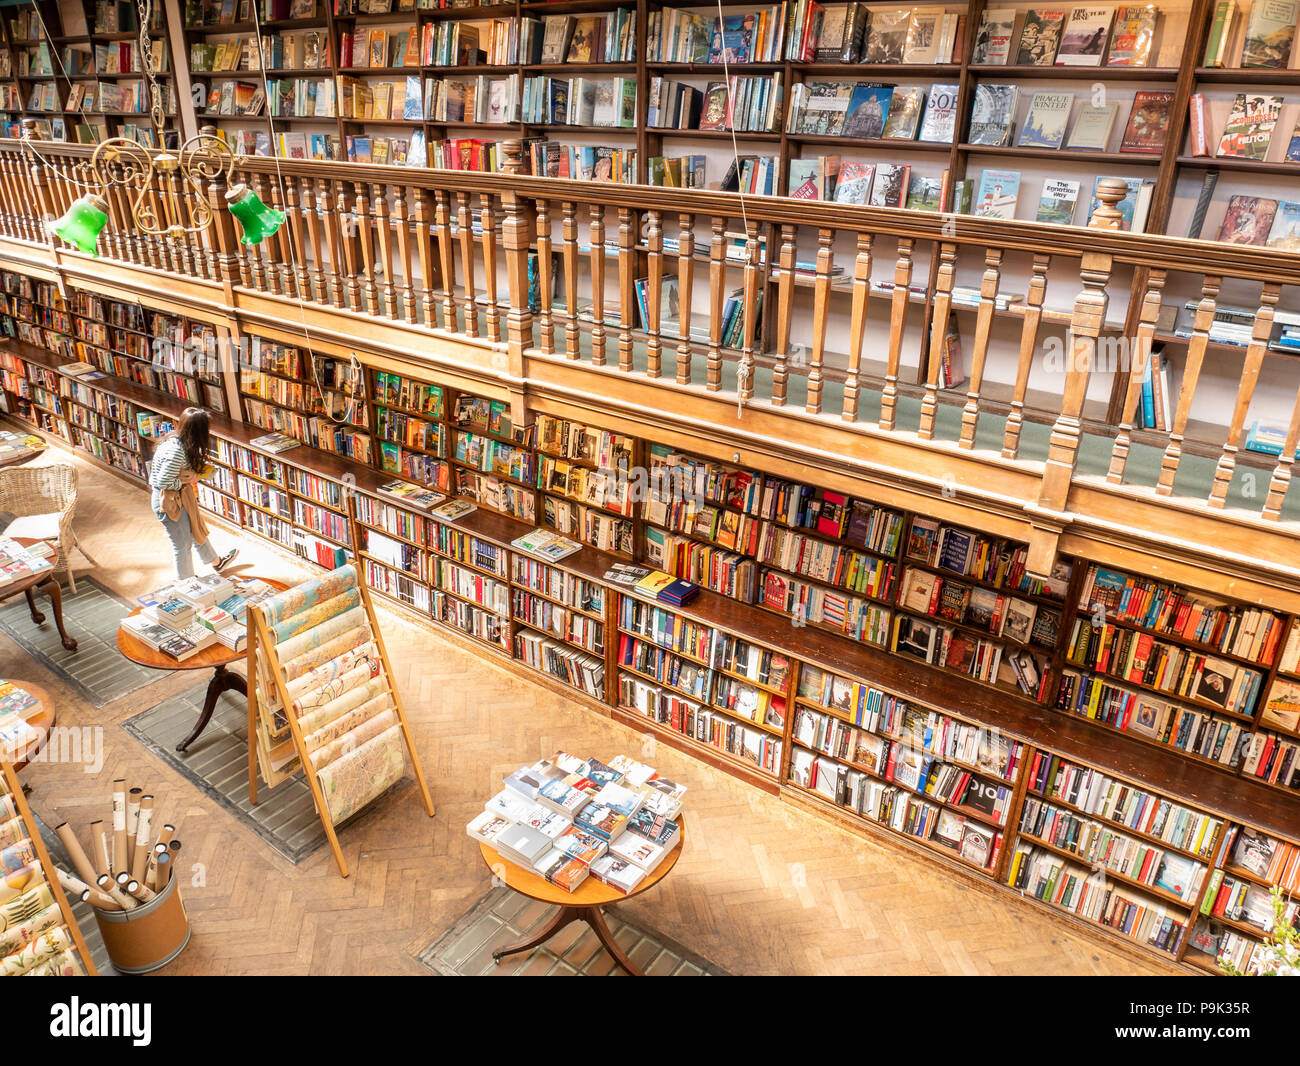 Daunt Books, Marylebone, London, UK Stock Photo